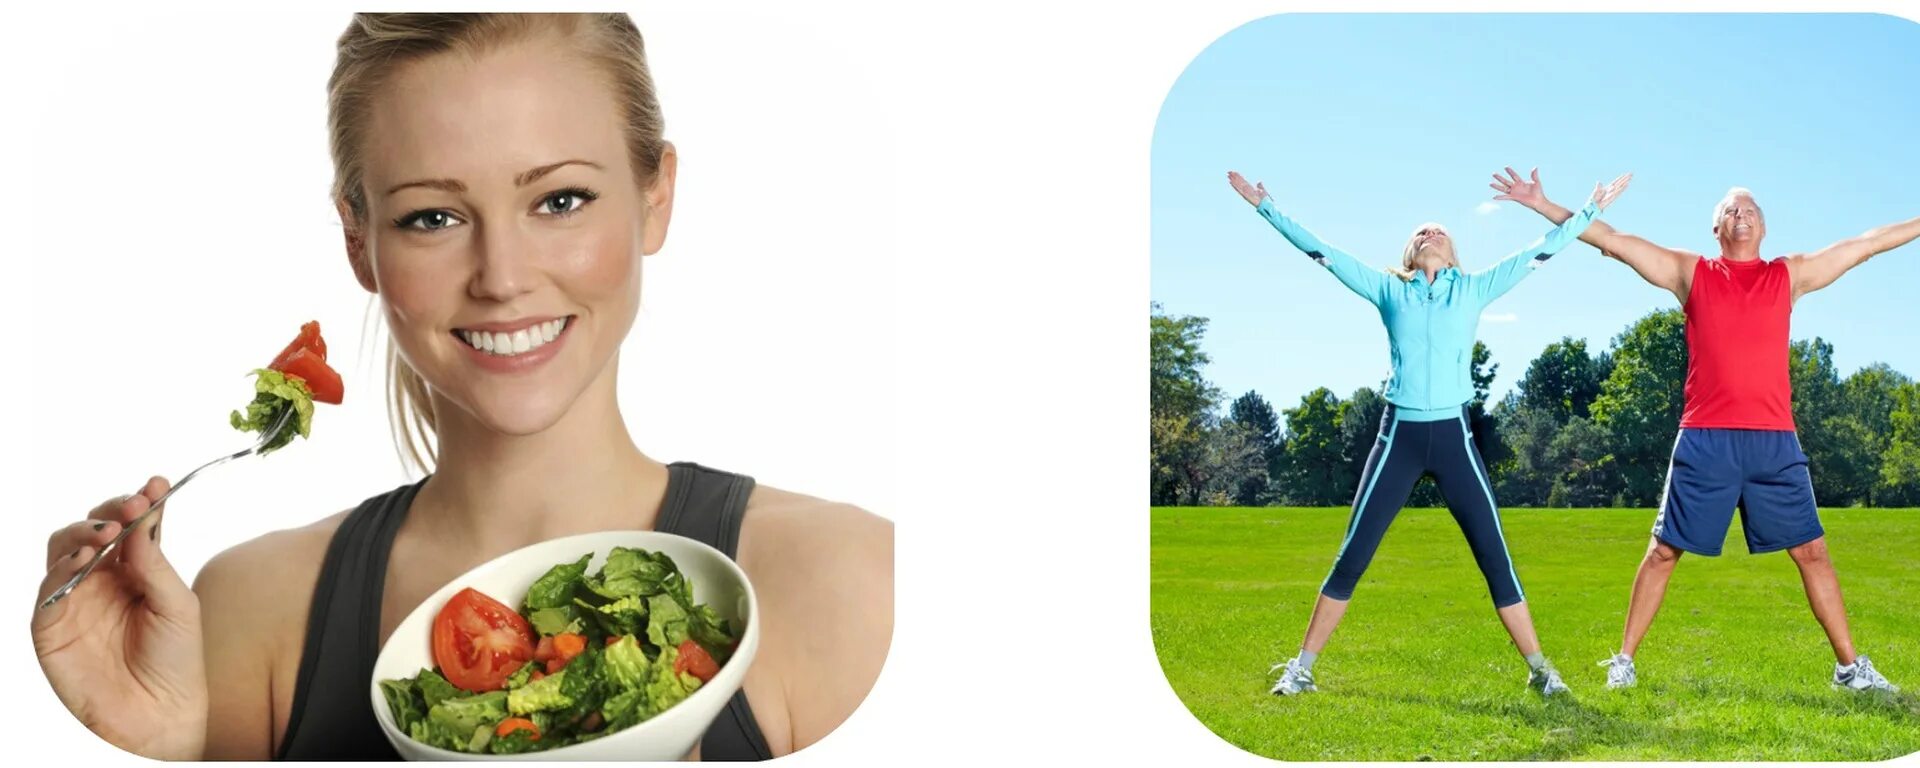 Здоровый образ жизни. Здоровый человек. Правильное питание и физическая активность. Образ здорового человека.